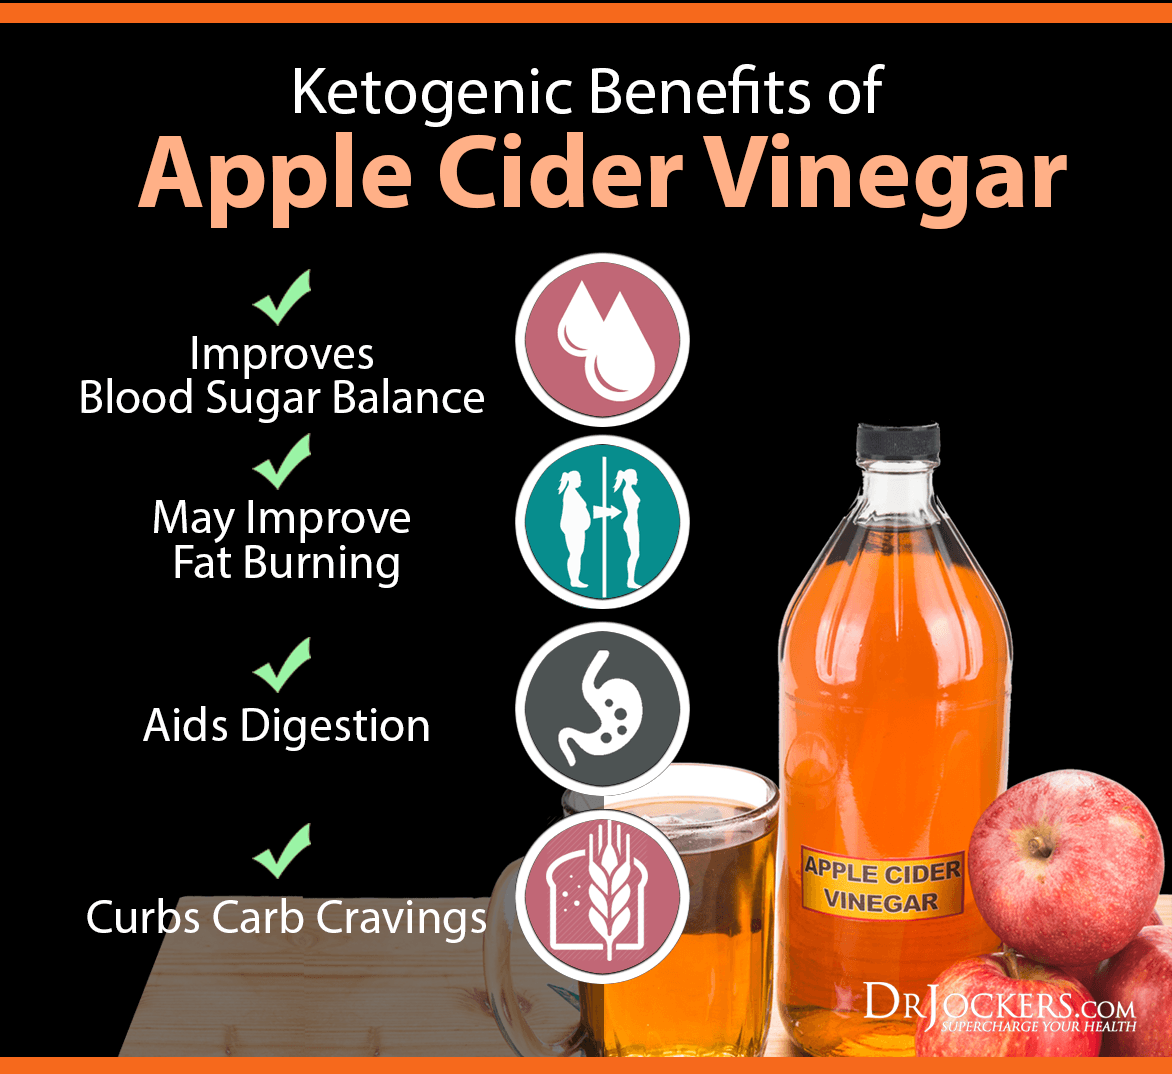 4 Ways To Use Apple Cider Vinegar On A Keto Diet